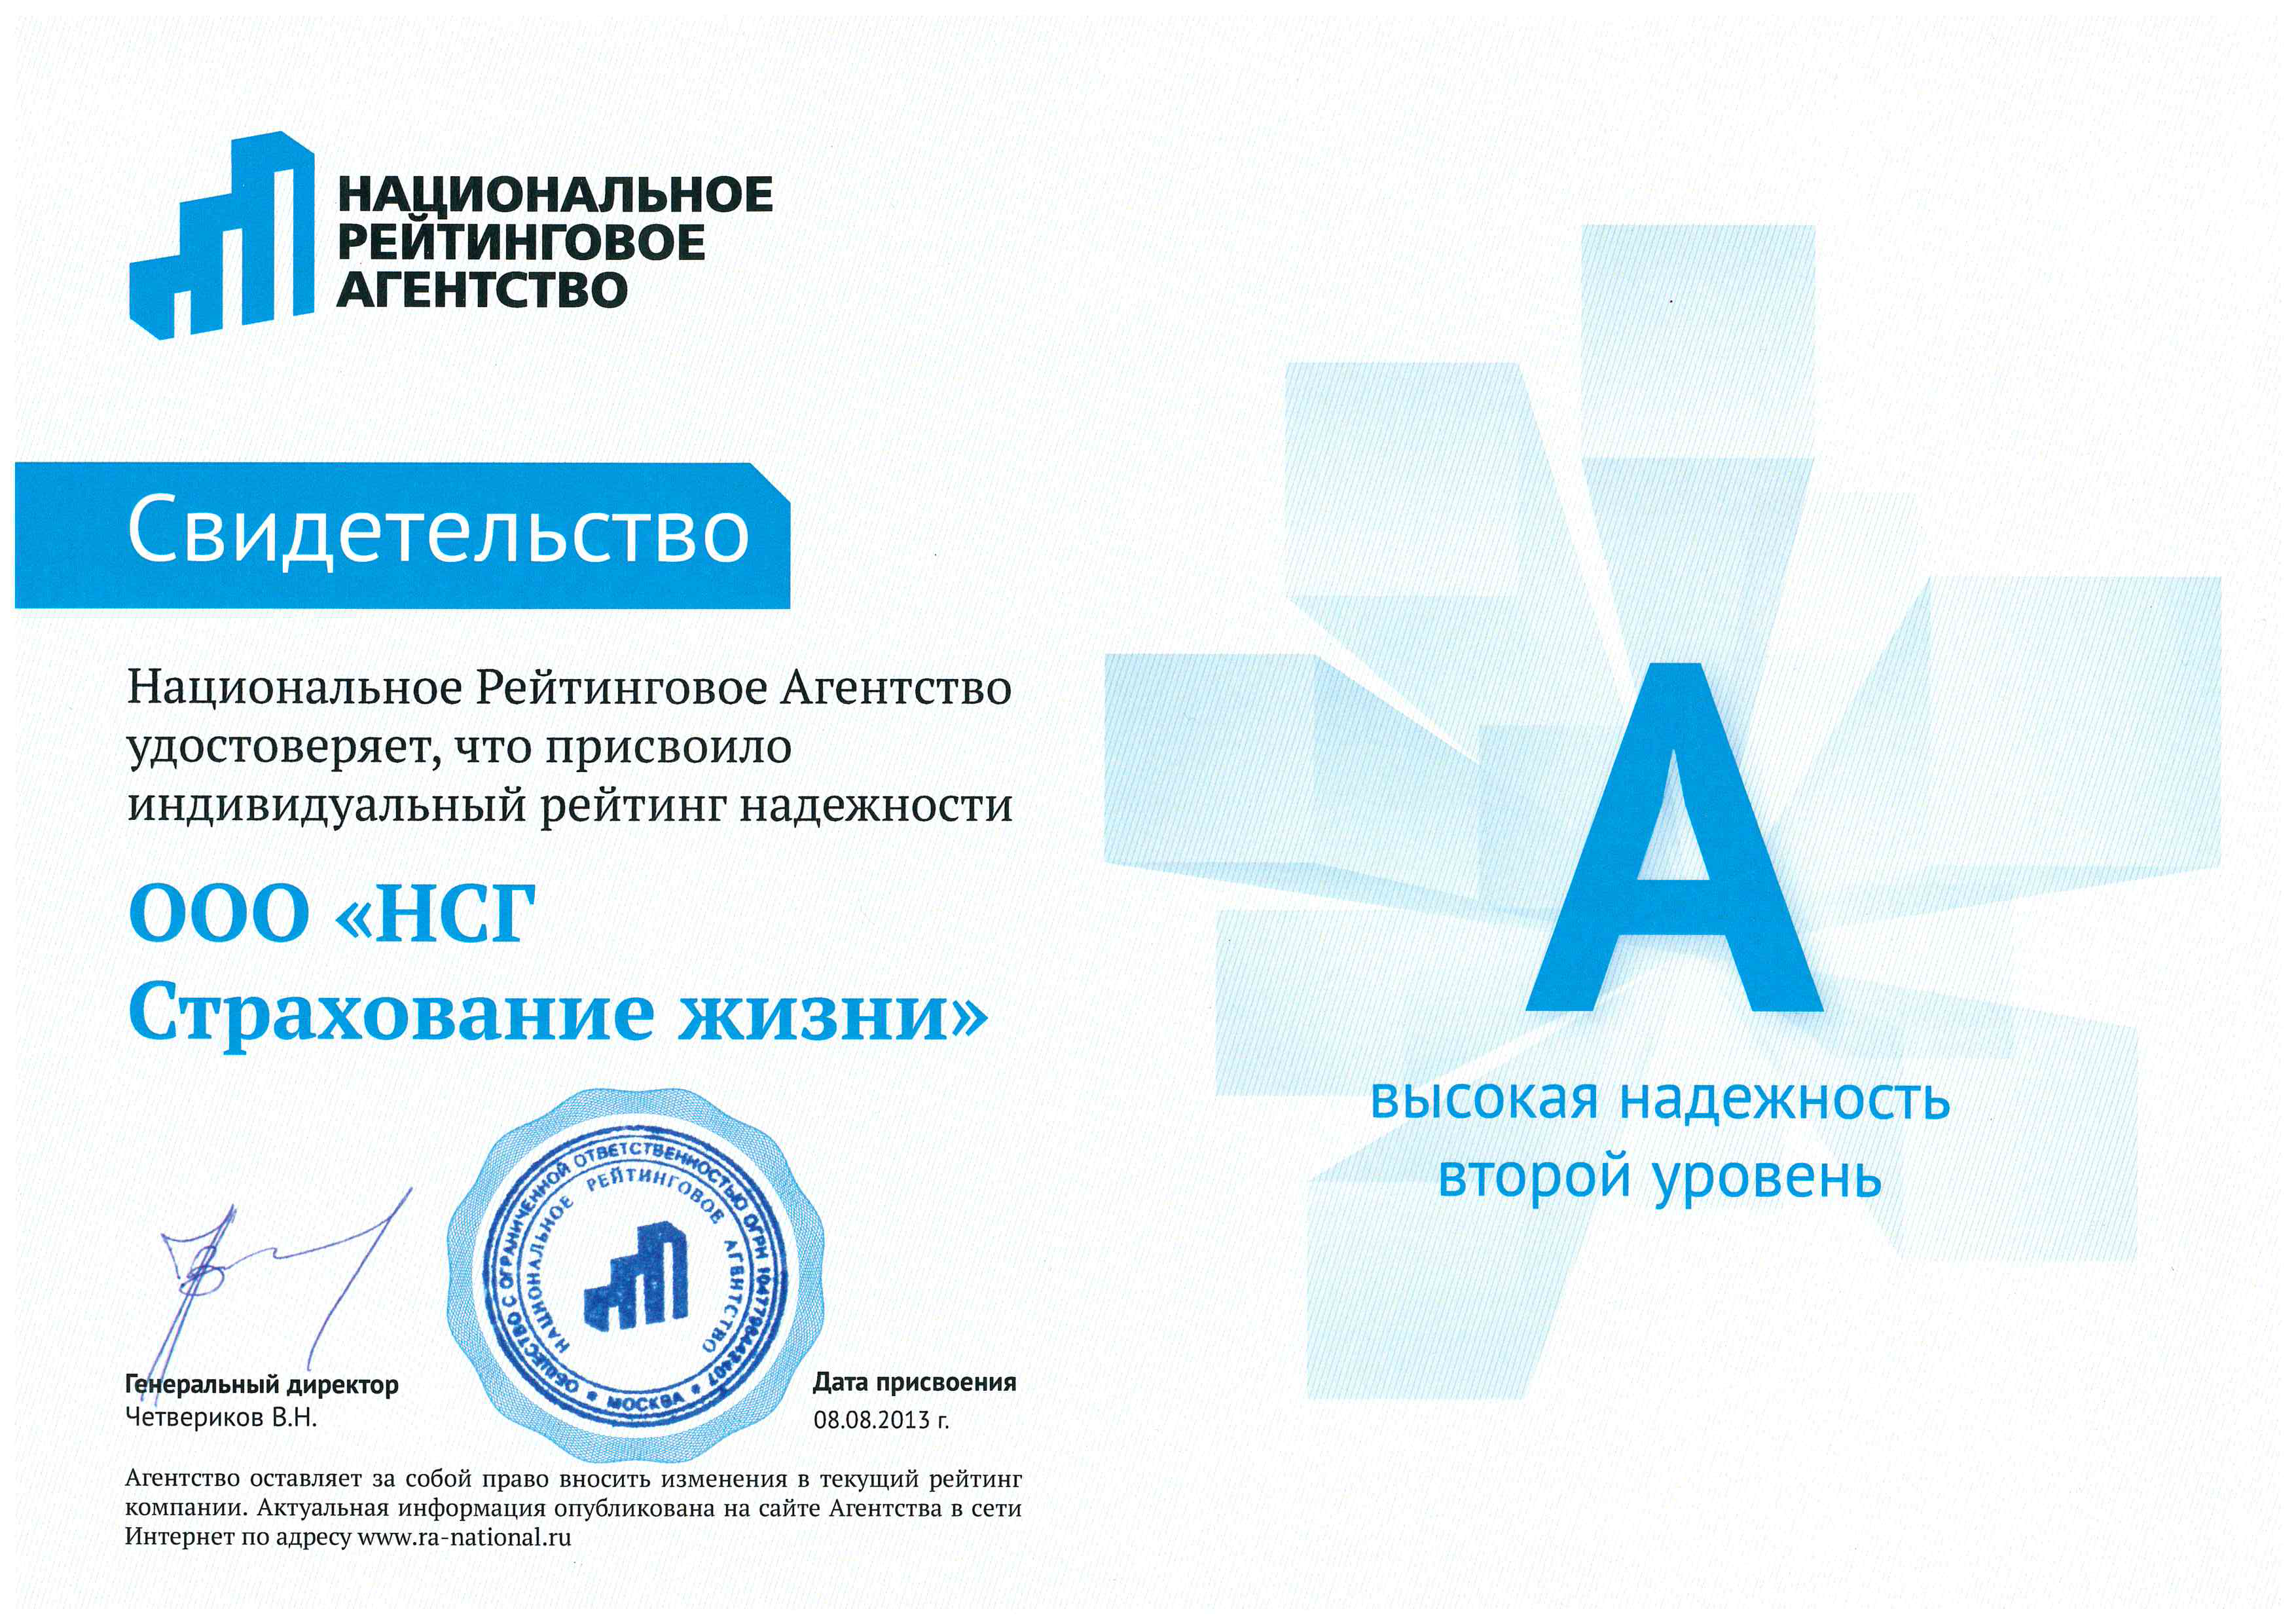 Агентство акра сайт. Нра рейтинговое агентство. Дело жизни страховая компания. Логотип национальной Российской ассоциации.